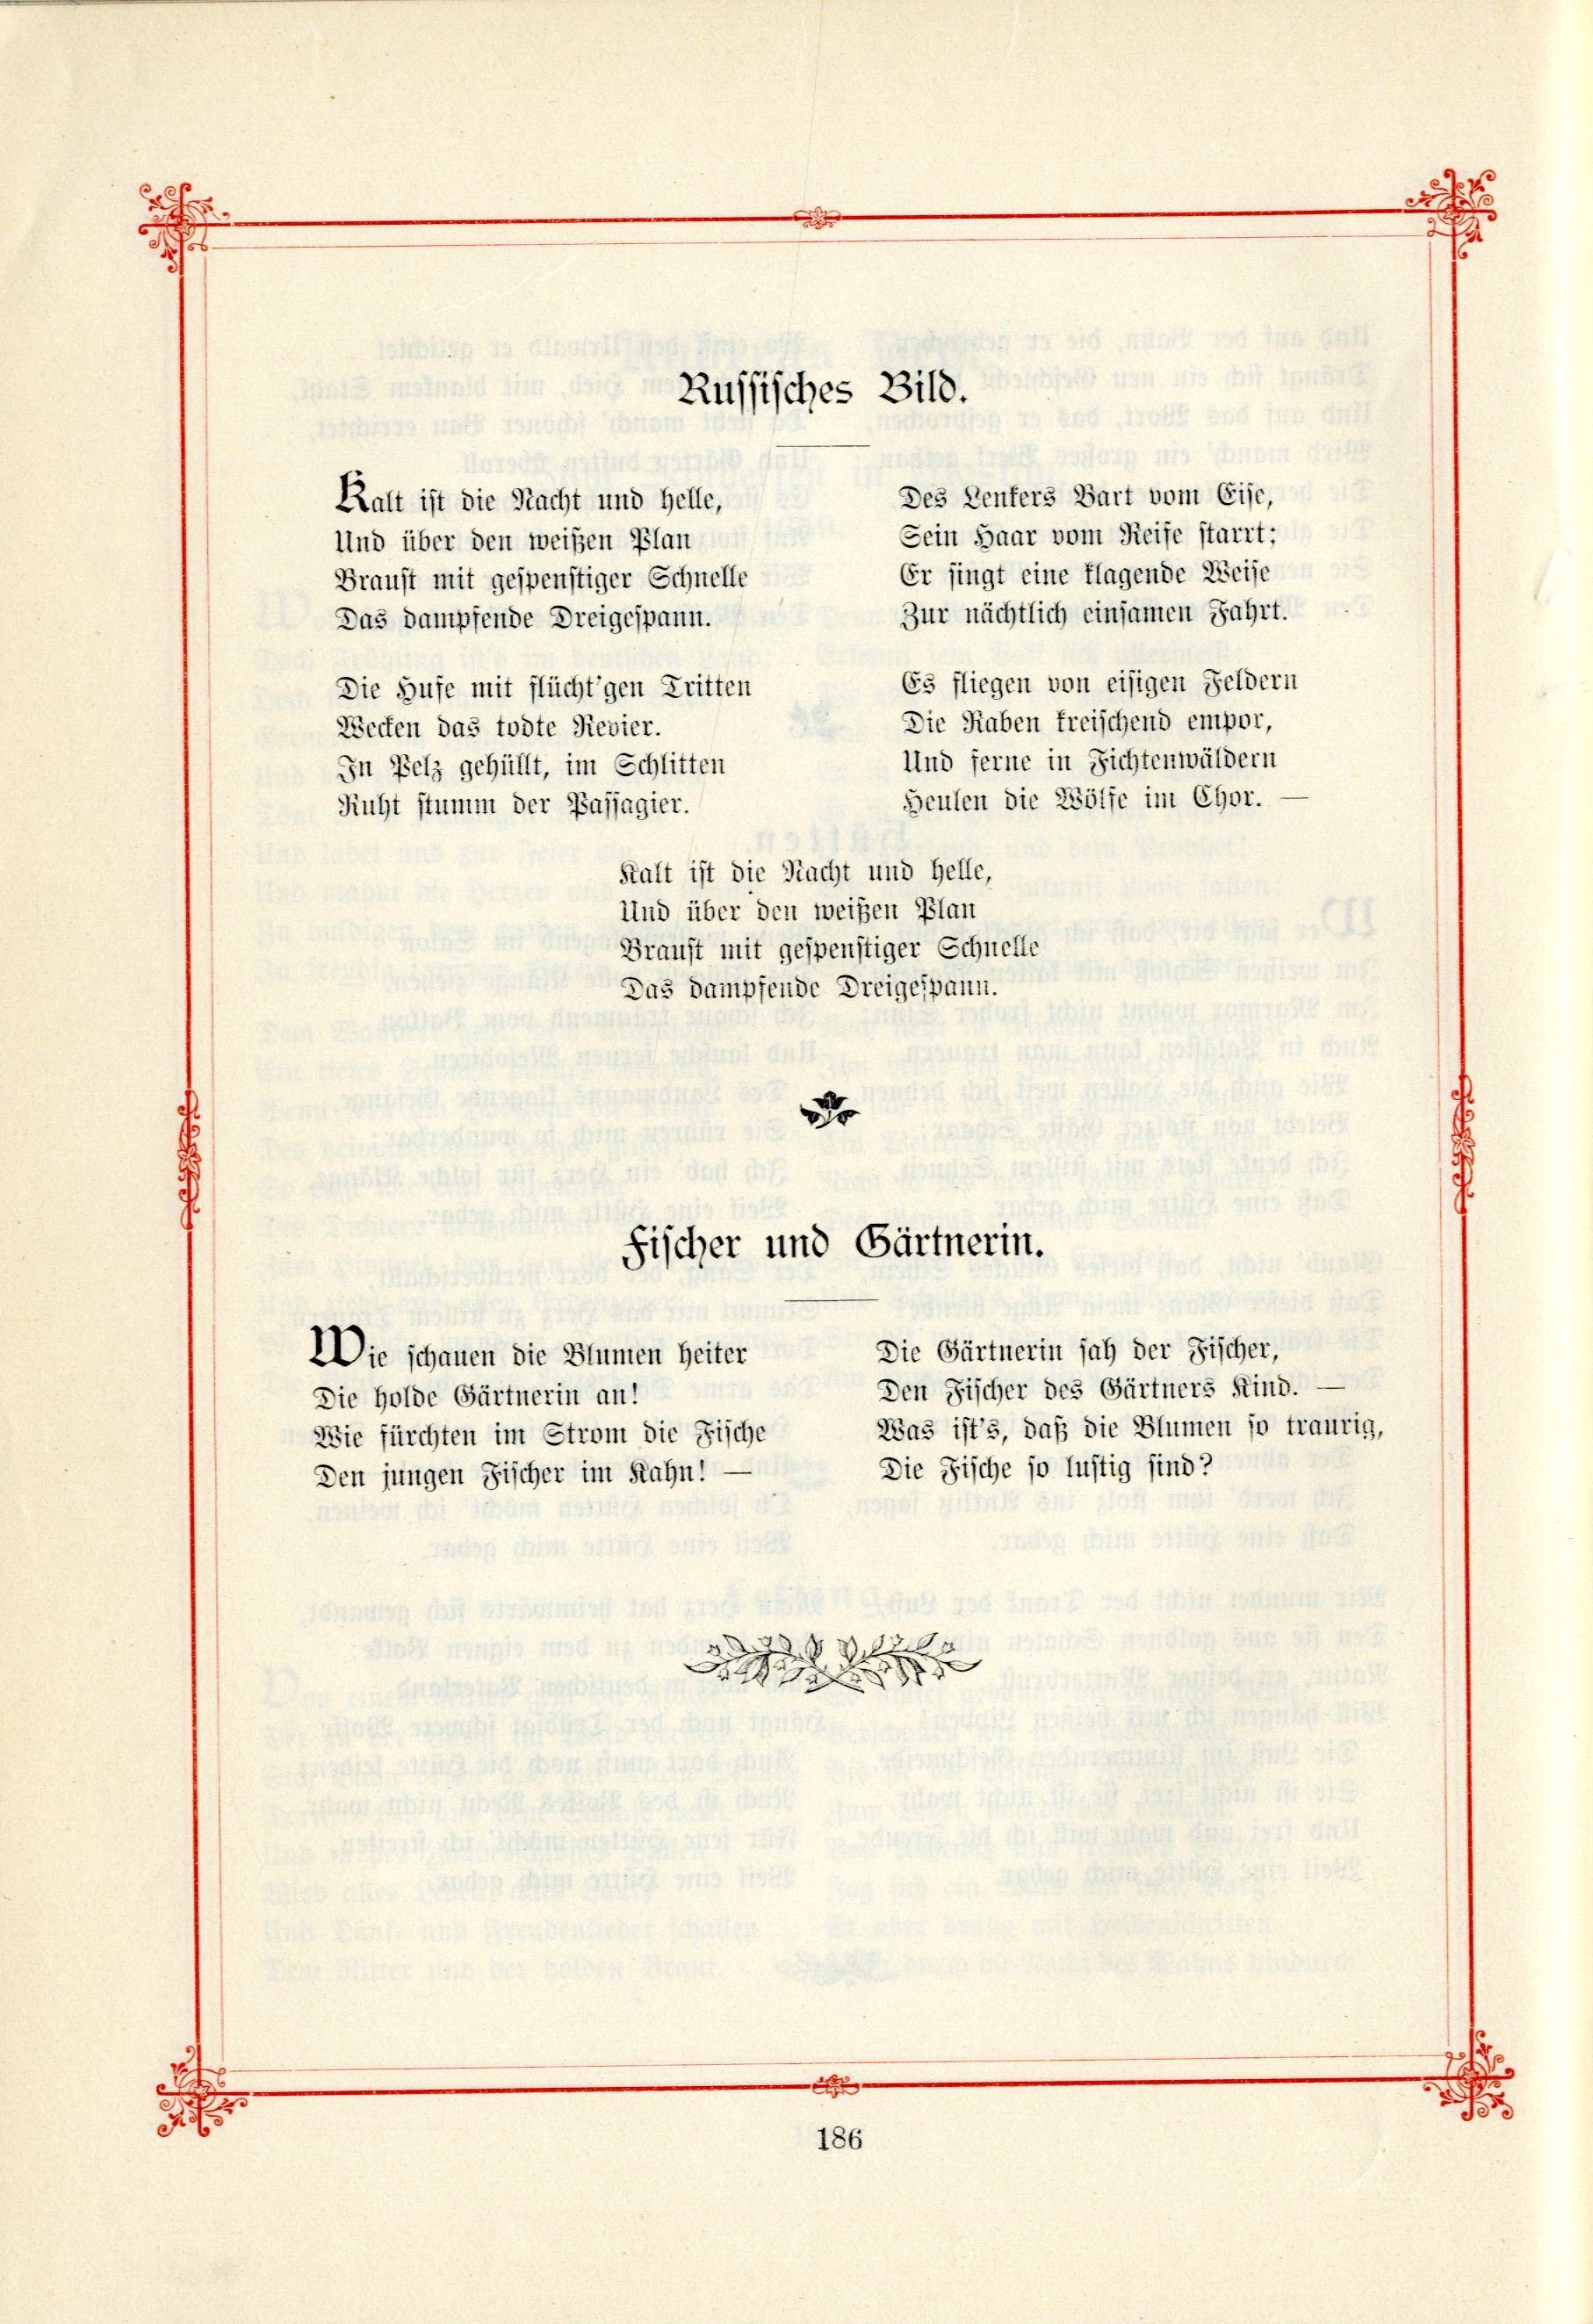 Russisches Bild (1895) | 1. (186) Main body of text